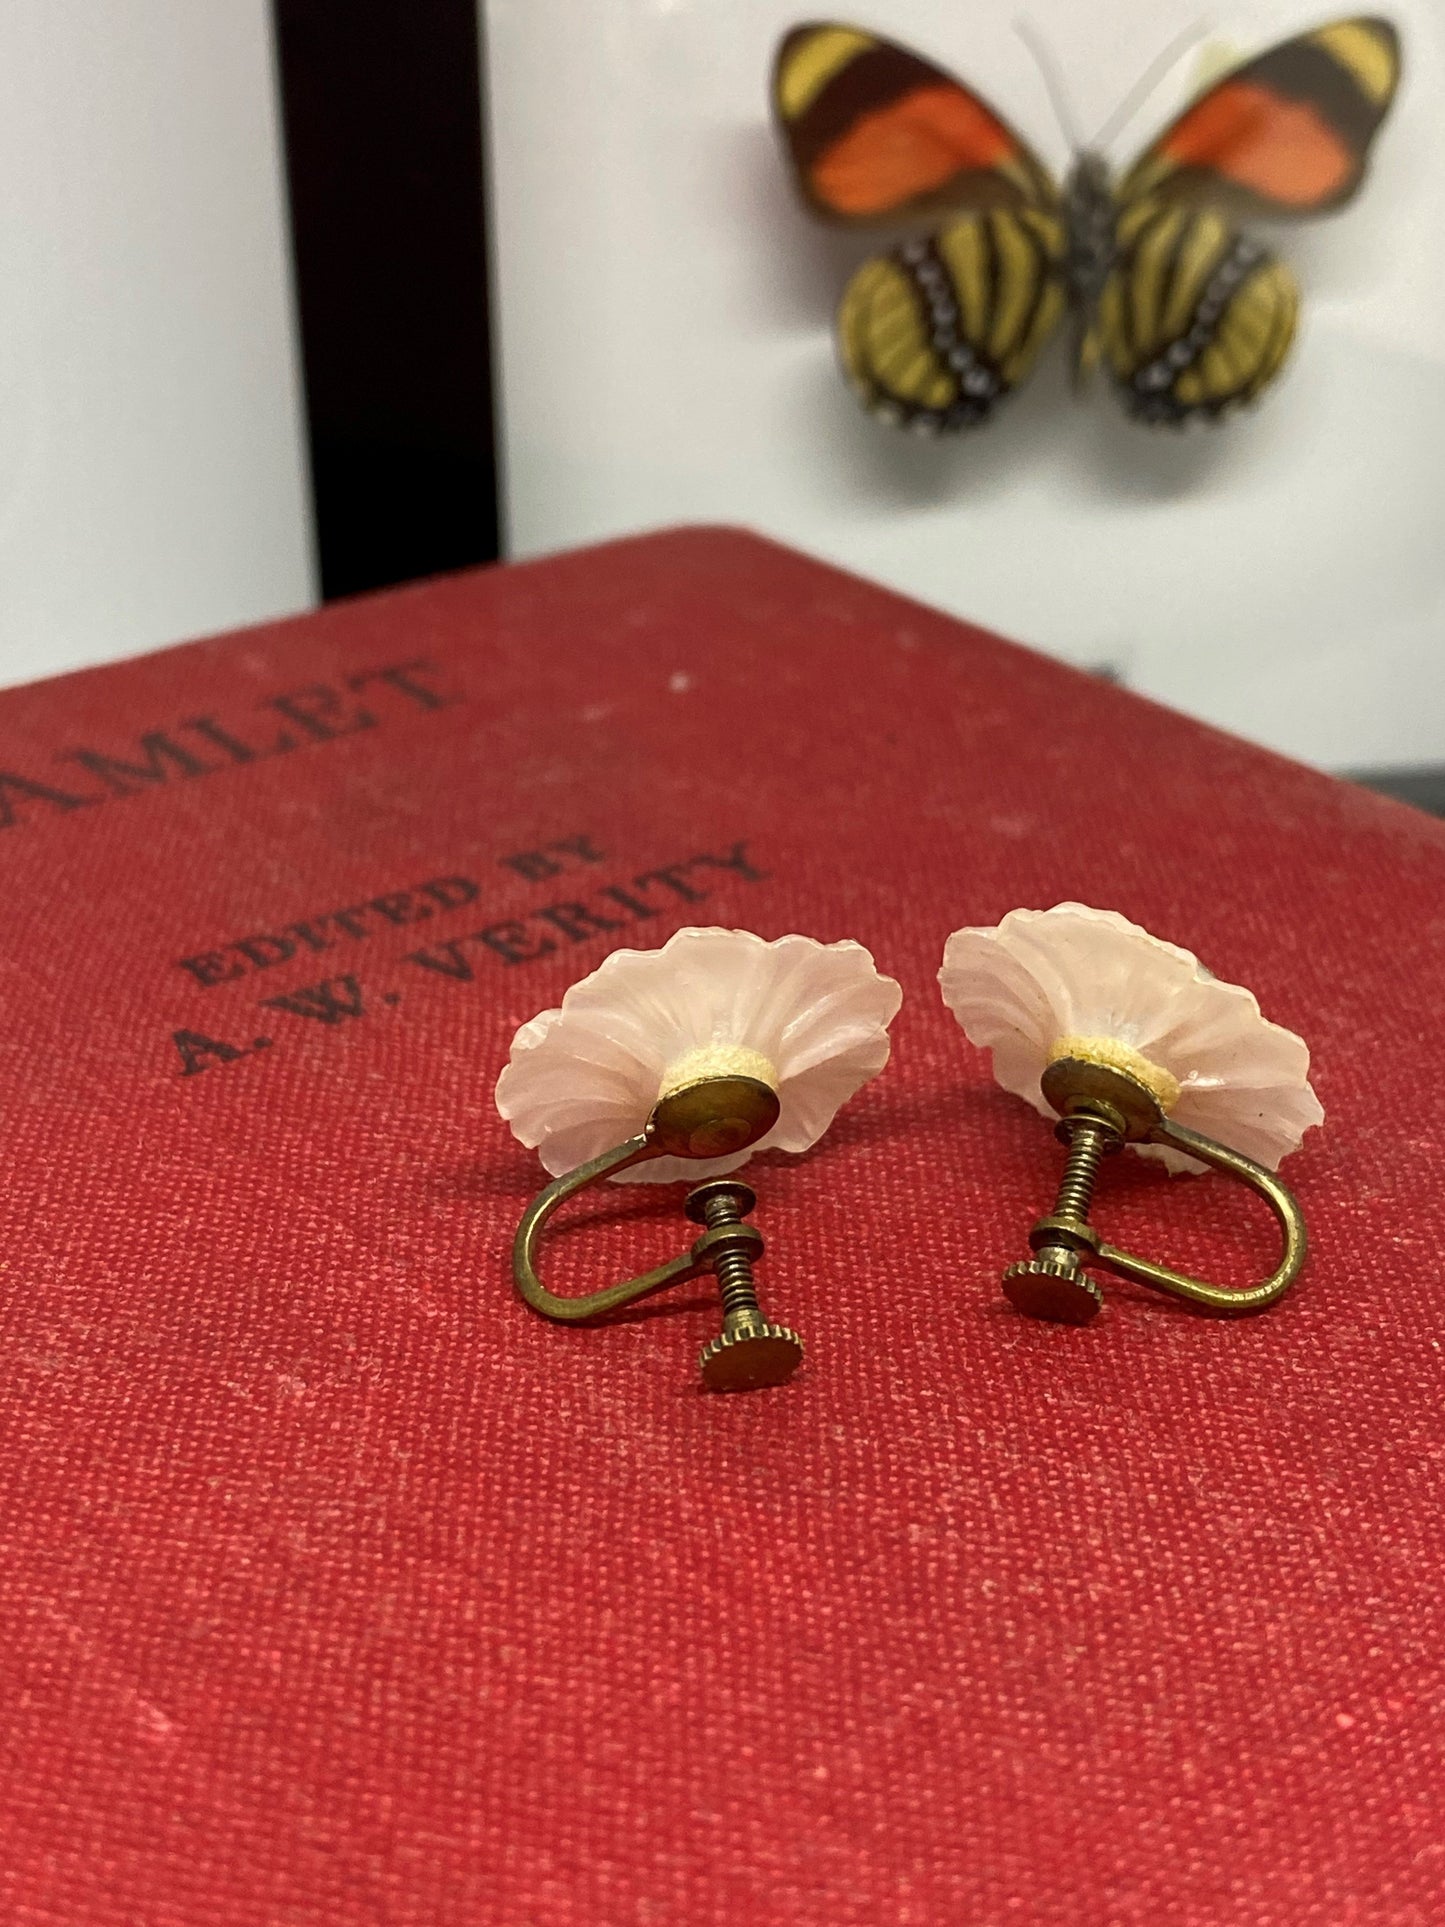 Pearl Daisy earrings 2cm diameter Vintage Vintage 